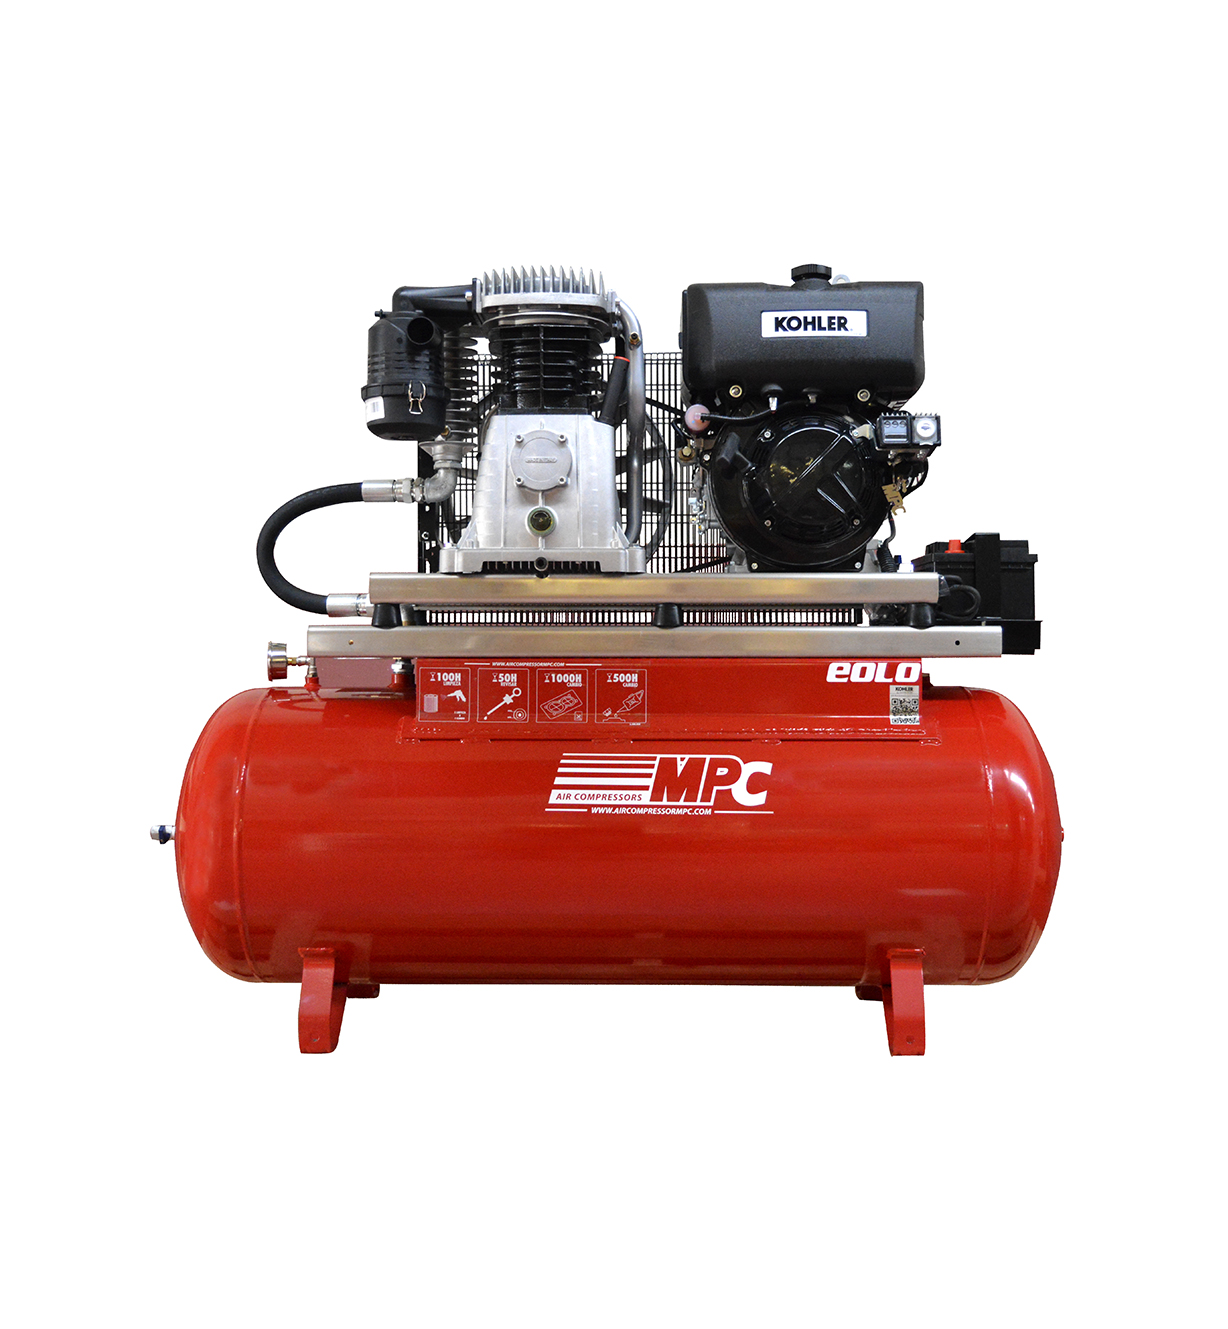 MOTEUR-COMPRESSEUR EOLO 130D (500L) - aircompressormpc